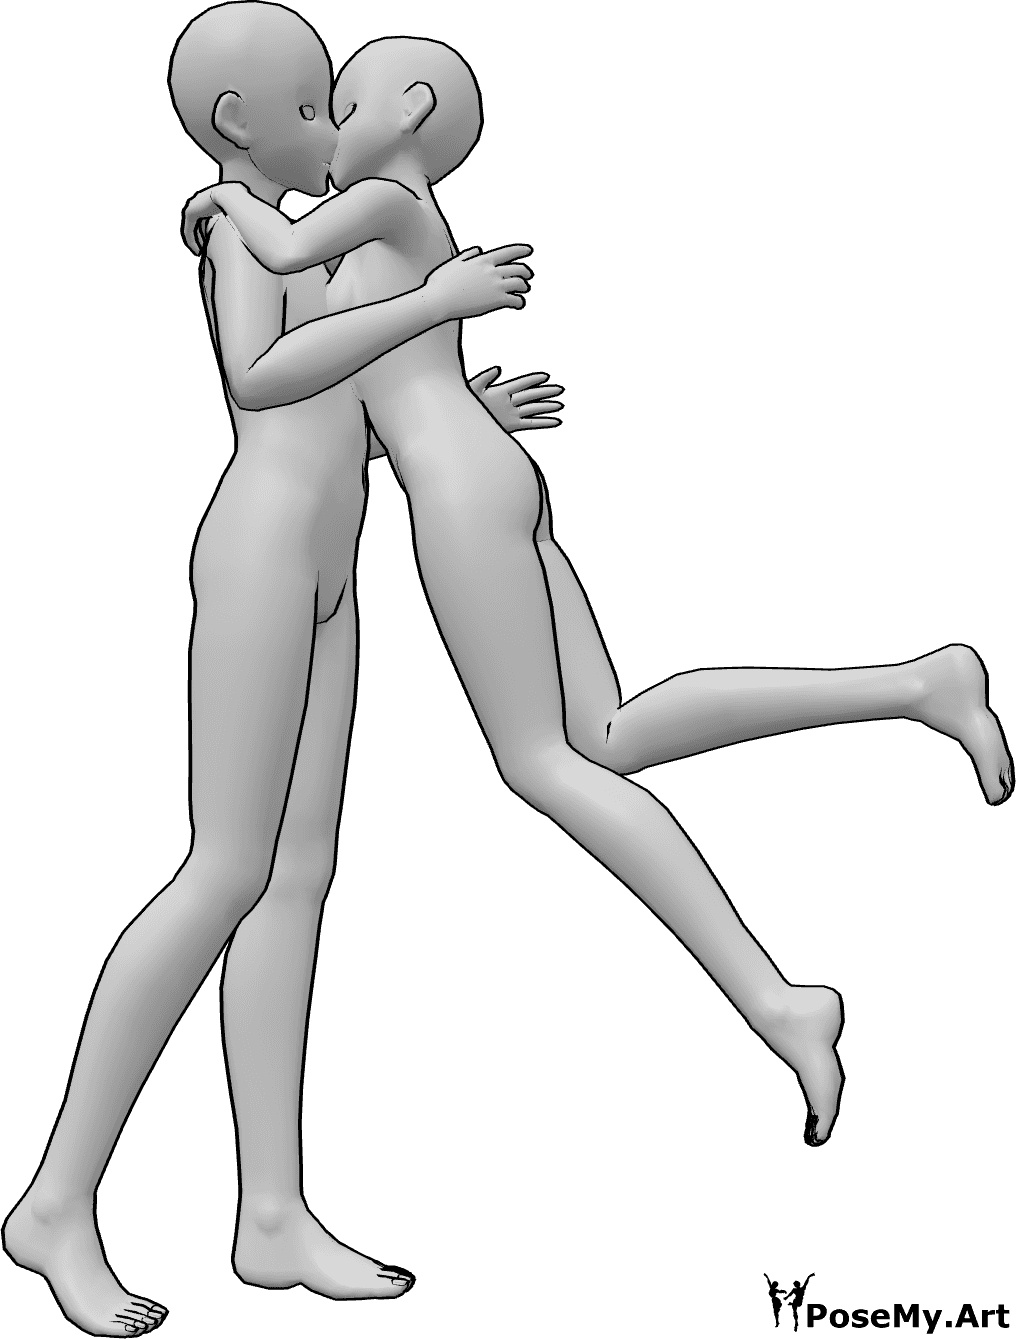 Référence des poses- Pose du baiser surprise de l'anime - La femelle de l'anime saute et donne un câlin et un baiser surprise au mâle.